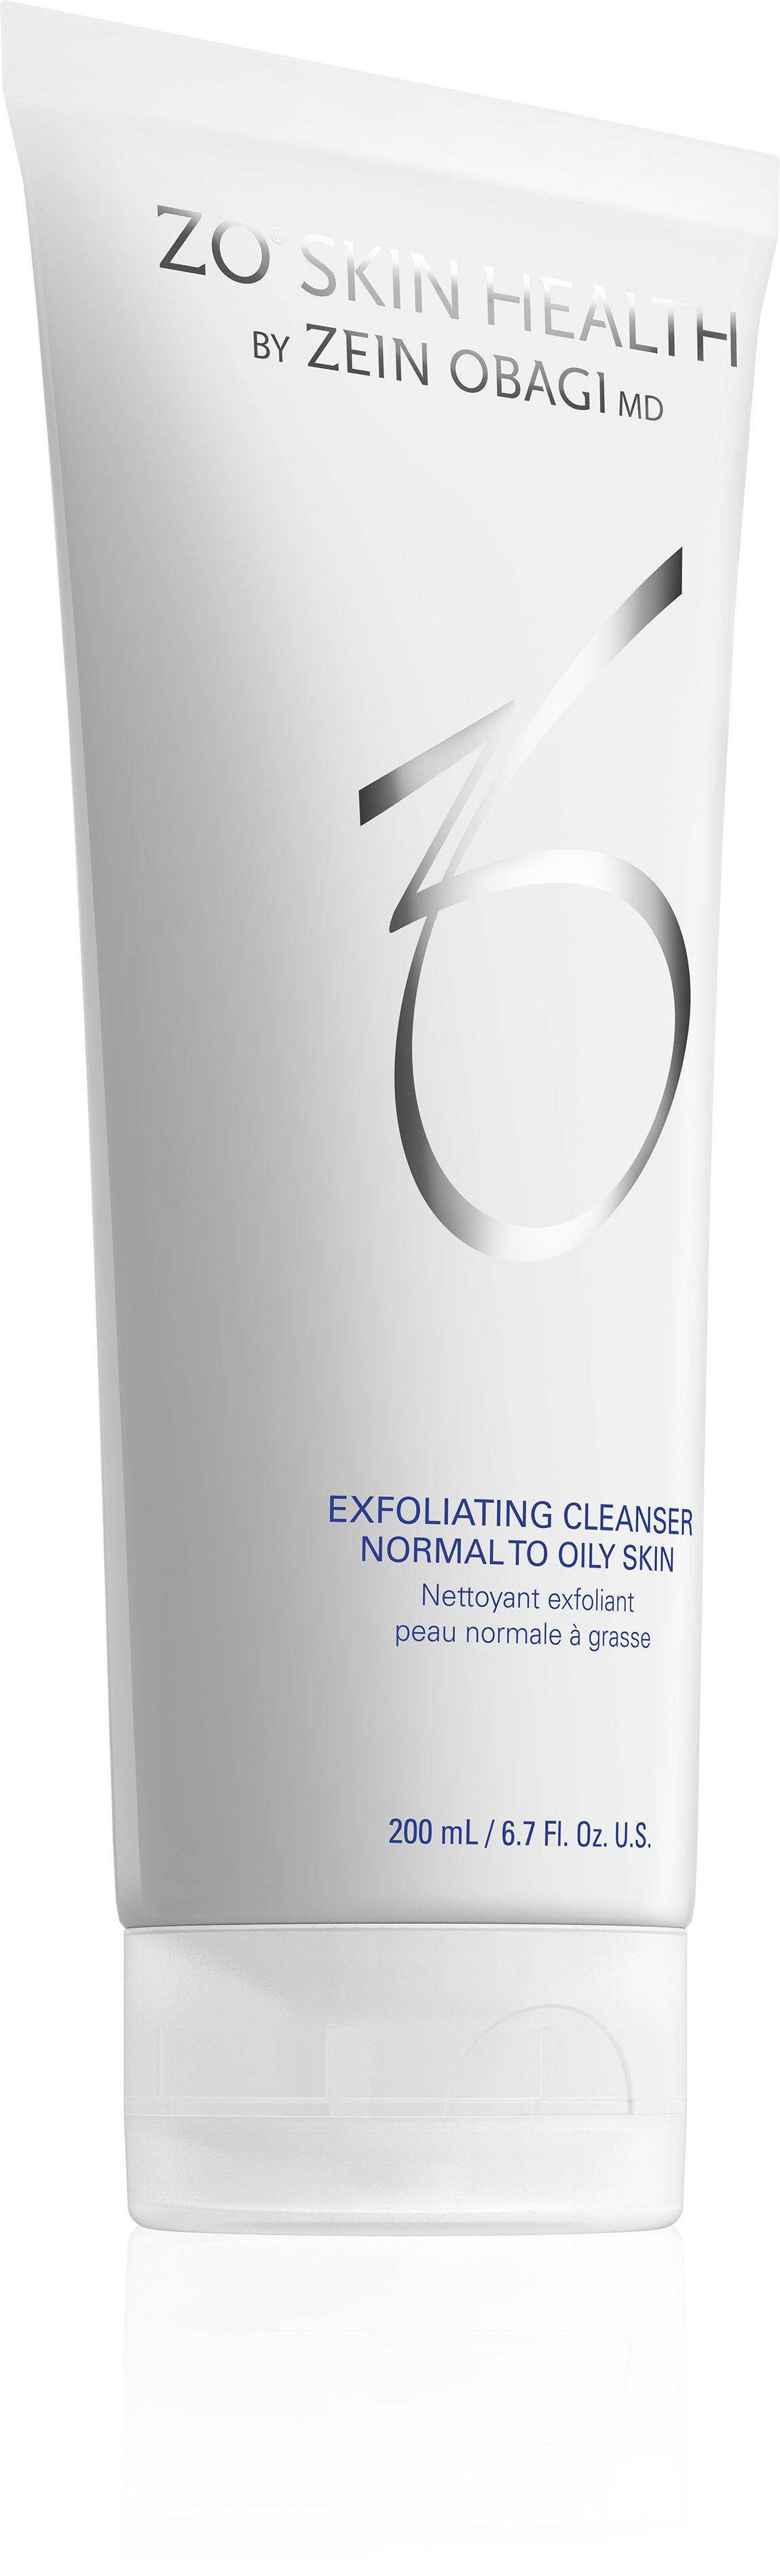 Exfoliating cleanser